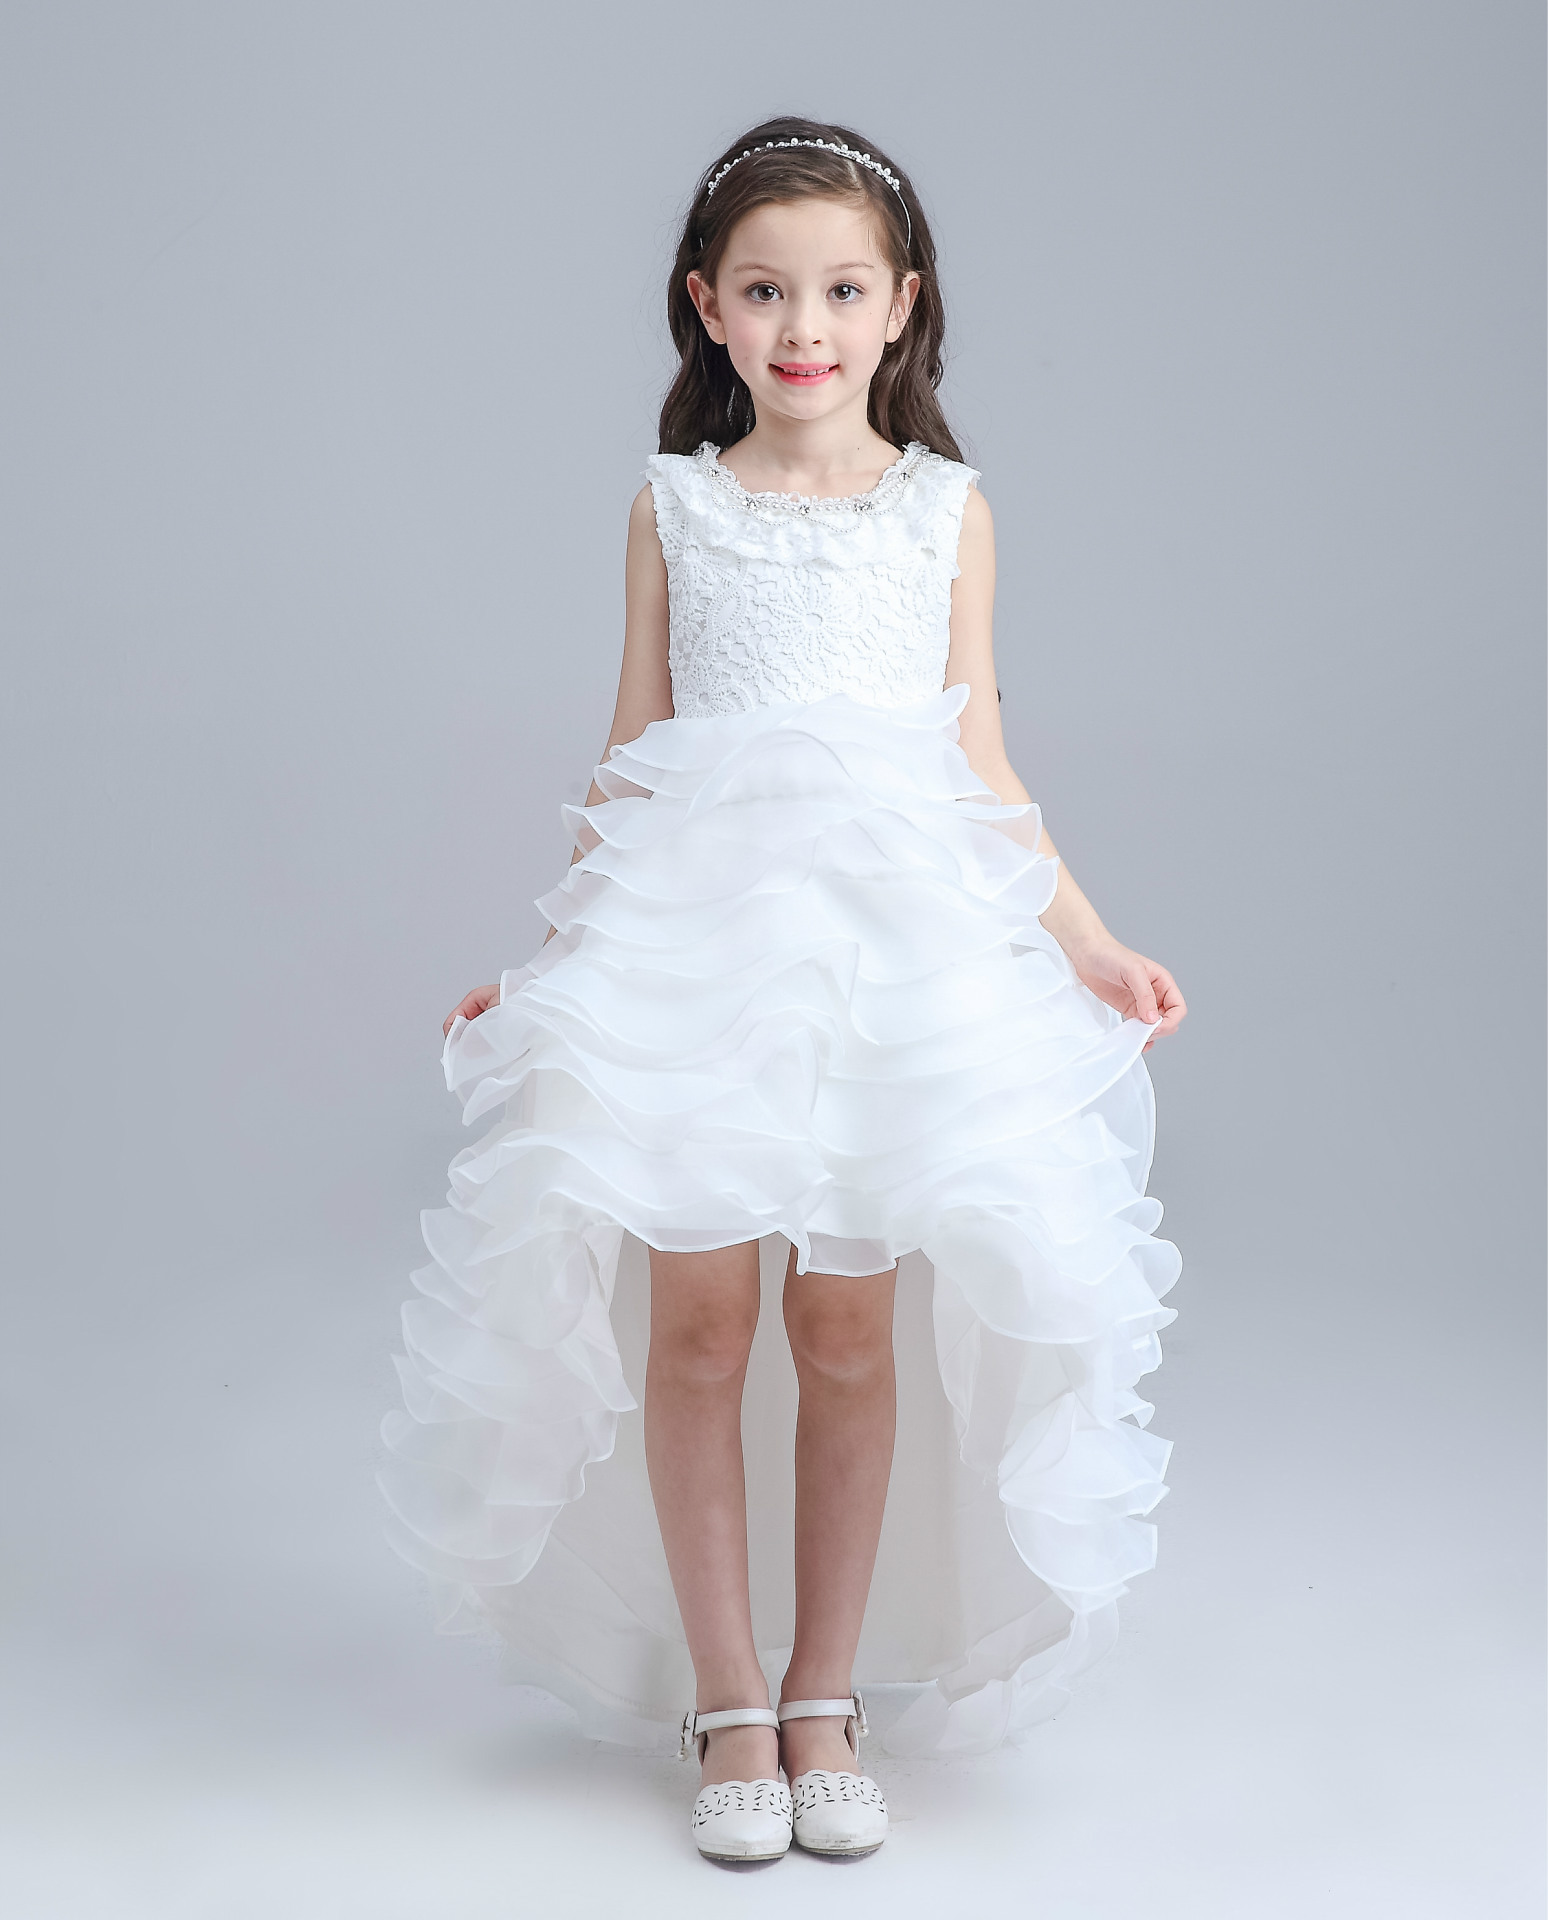 white toddler dress for wedding